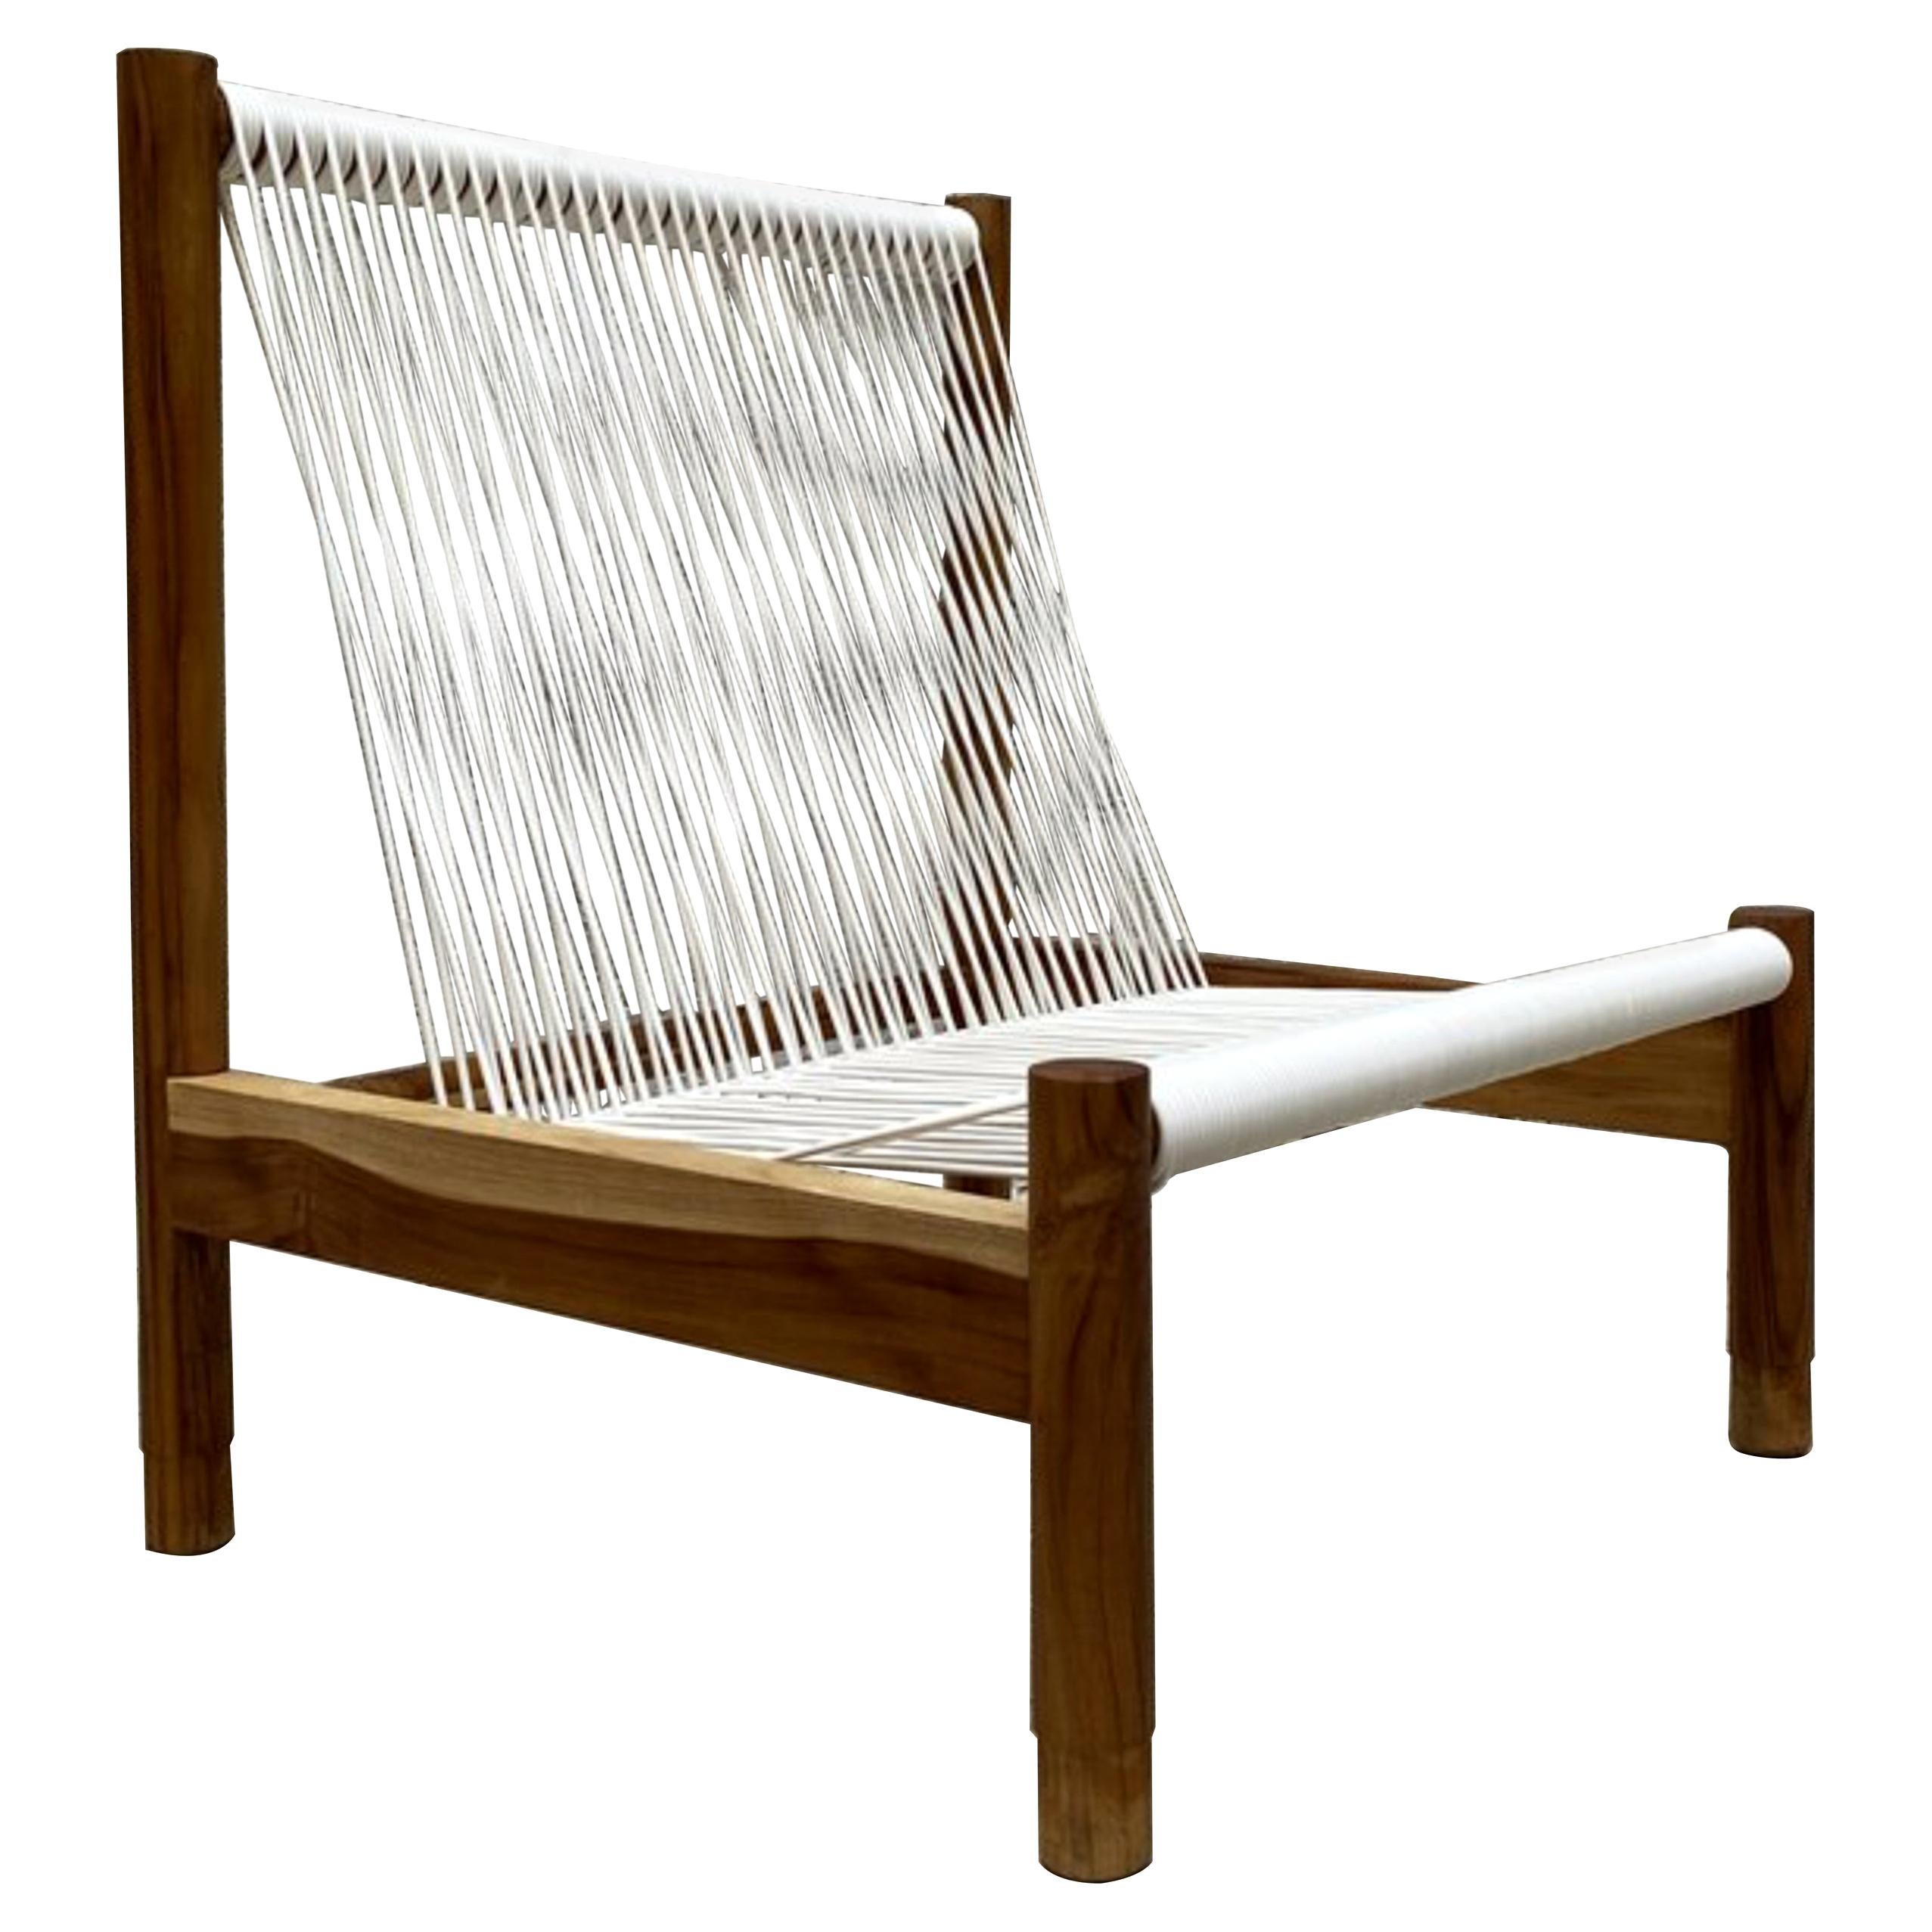 Al Sol-Stuhl für den Außenbereich, Maria Beckmann, vertreten von Tuleste Factory